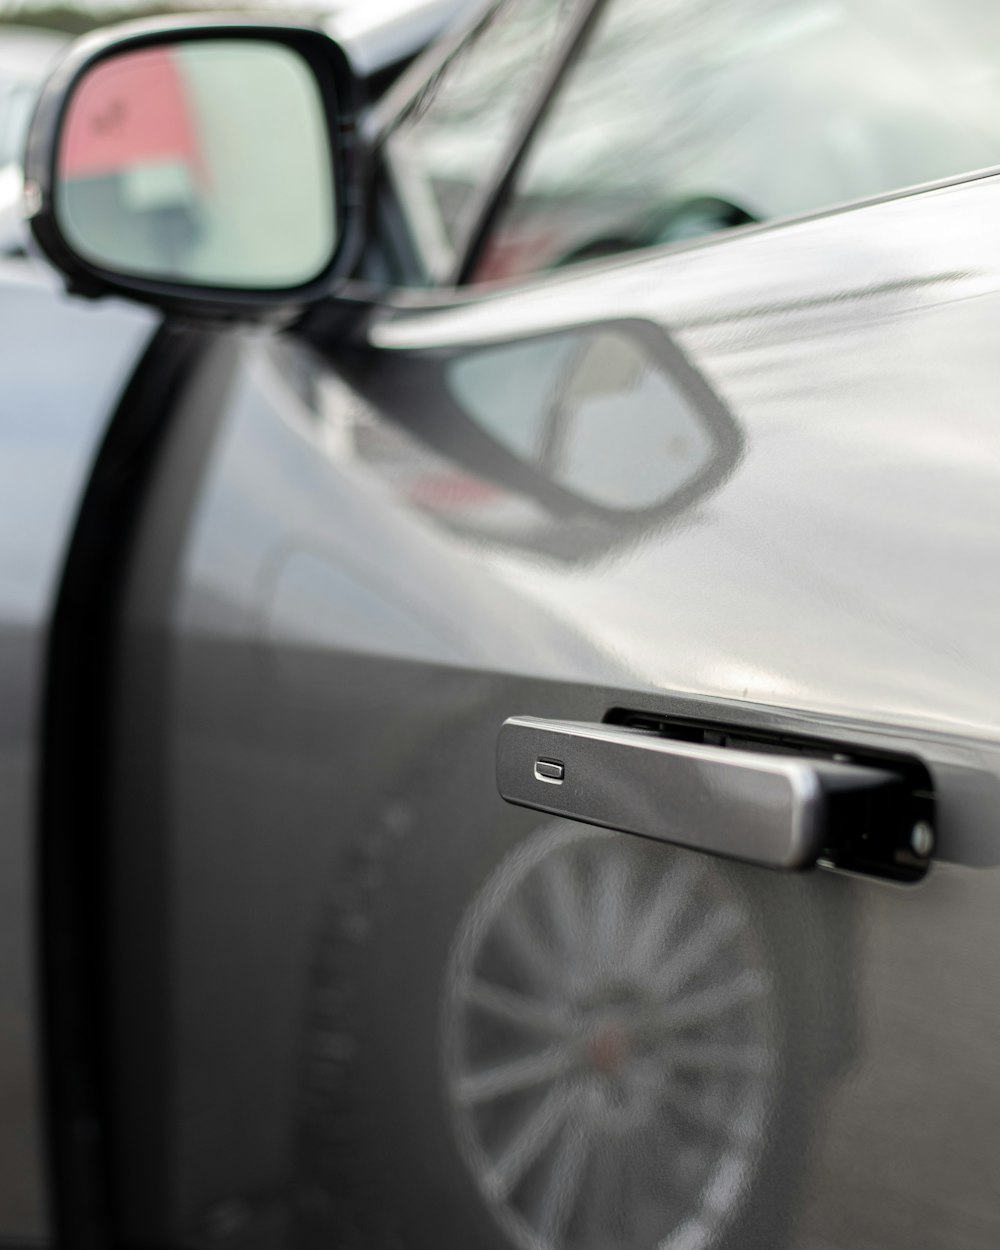 a close up of a car's handle